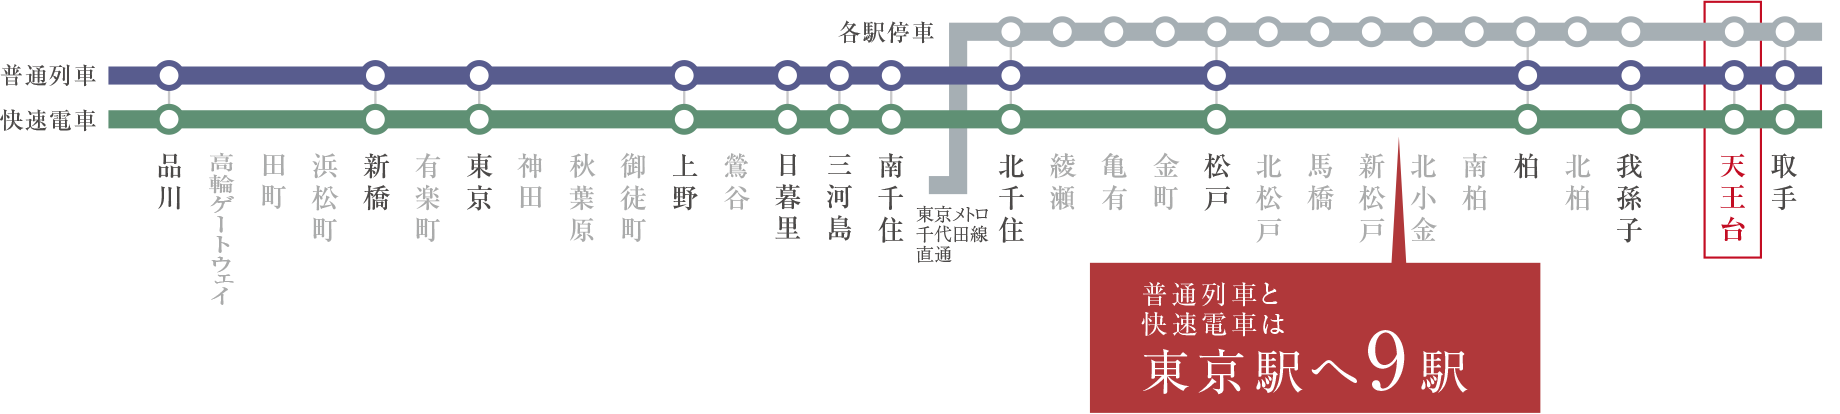 常磐線路線図／普通列車と快速電車は東京駅へ9駅